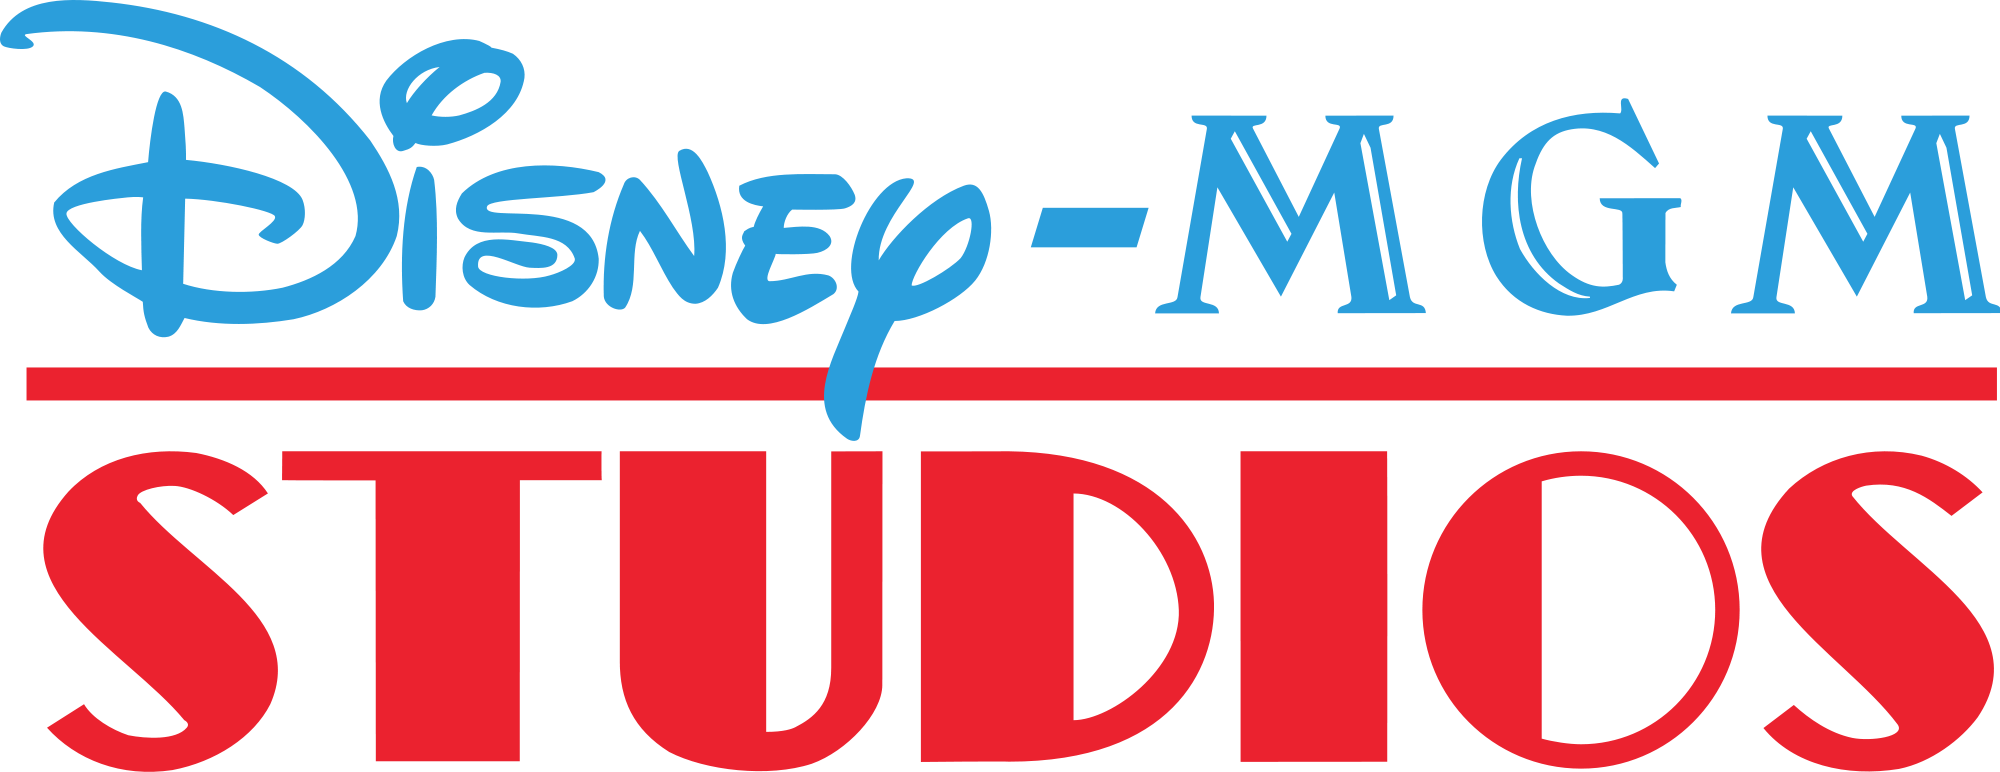 Disney's Hollywood Studios | Disney Wiki | FANDOM powered by Wikia